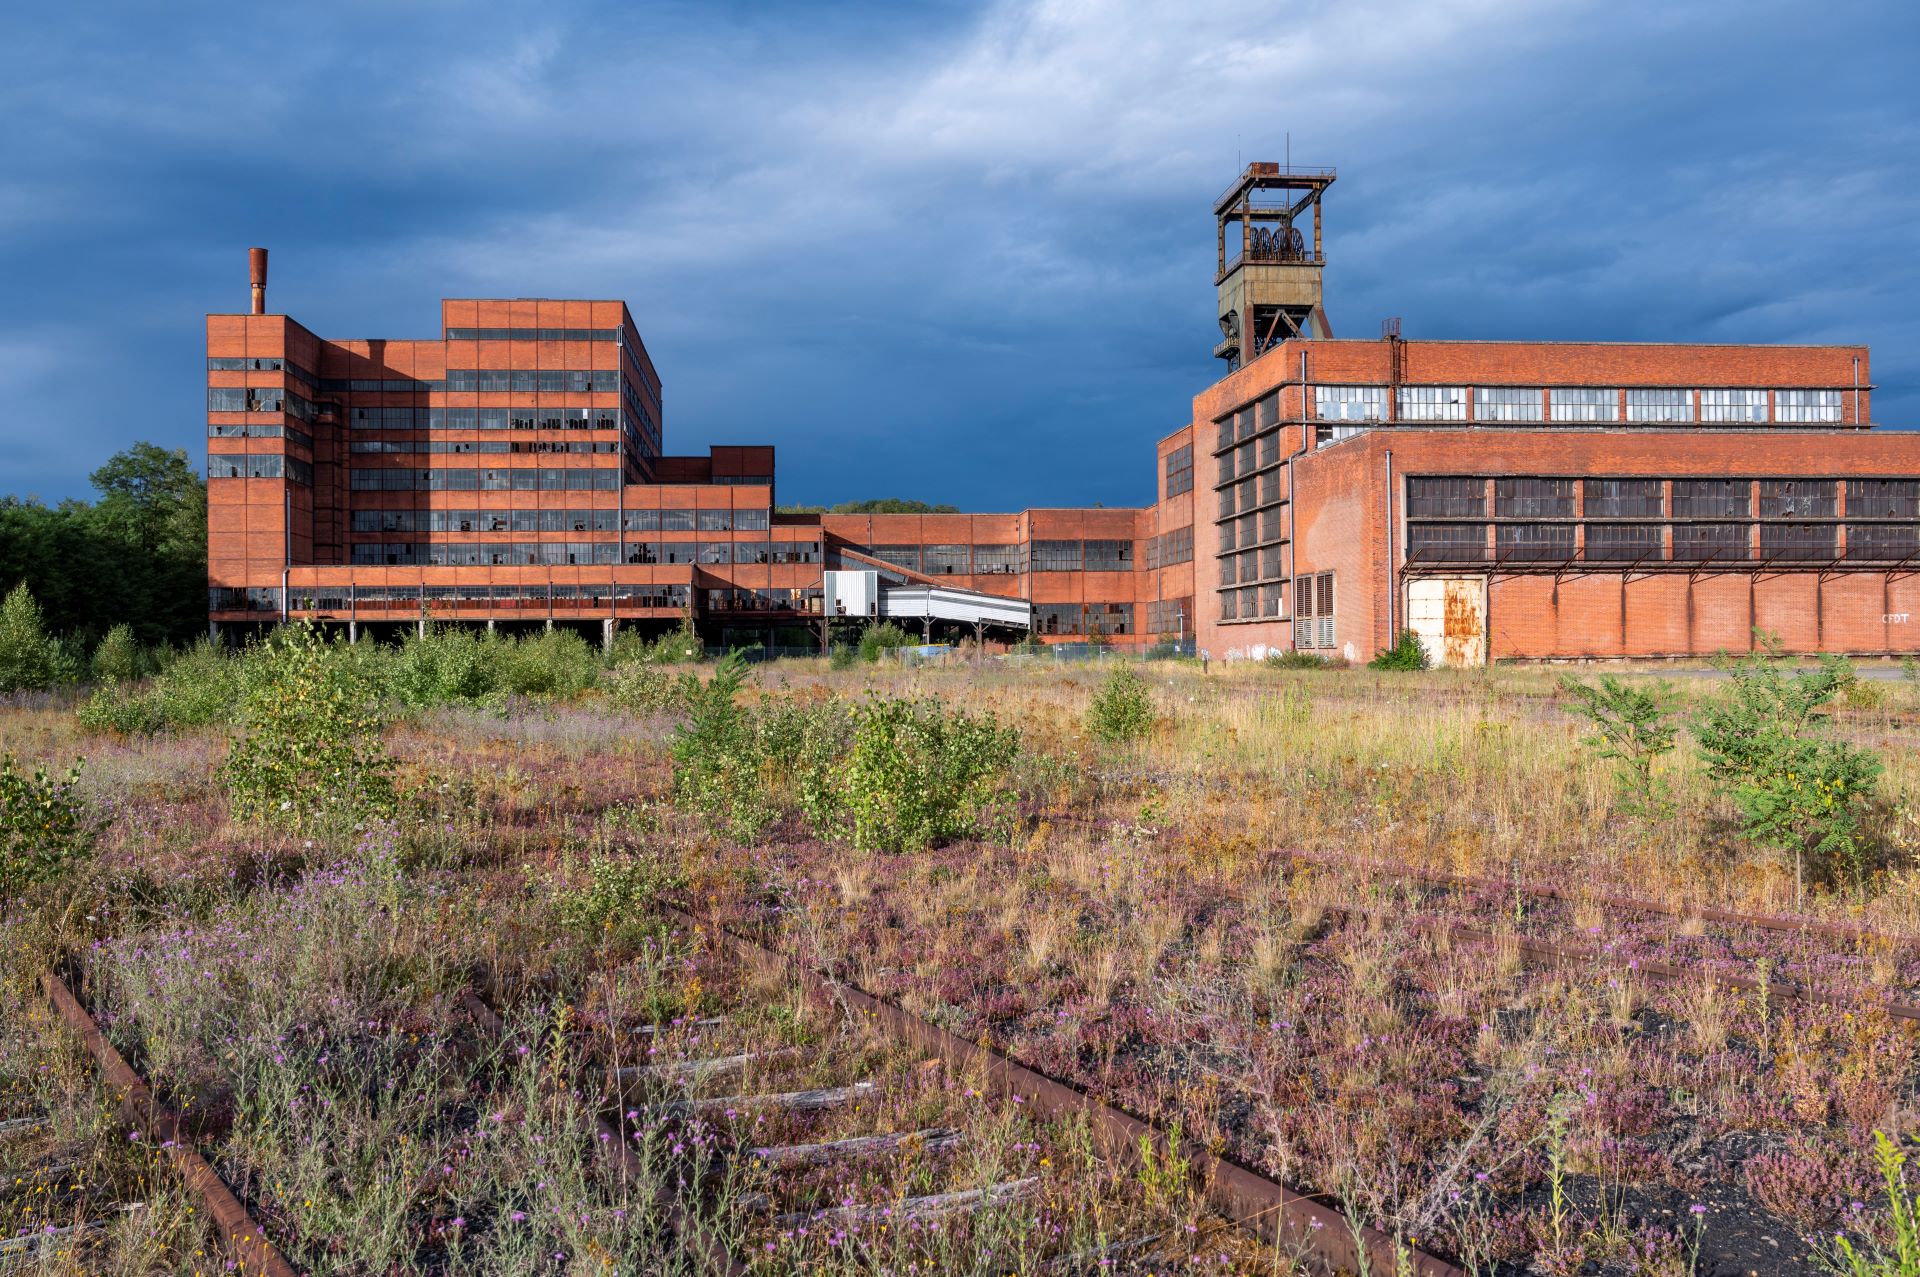 Wenn der Himmel dunkler und bedeckter wird, fallen die Gebäude des ehemaligen Bergwerks durch ihre rotbraune Farbe auf.